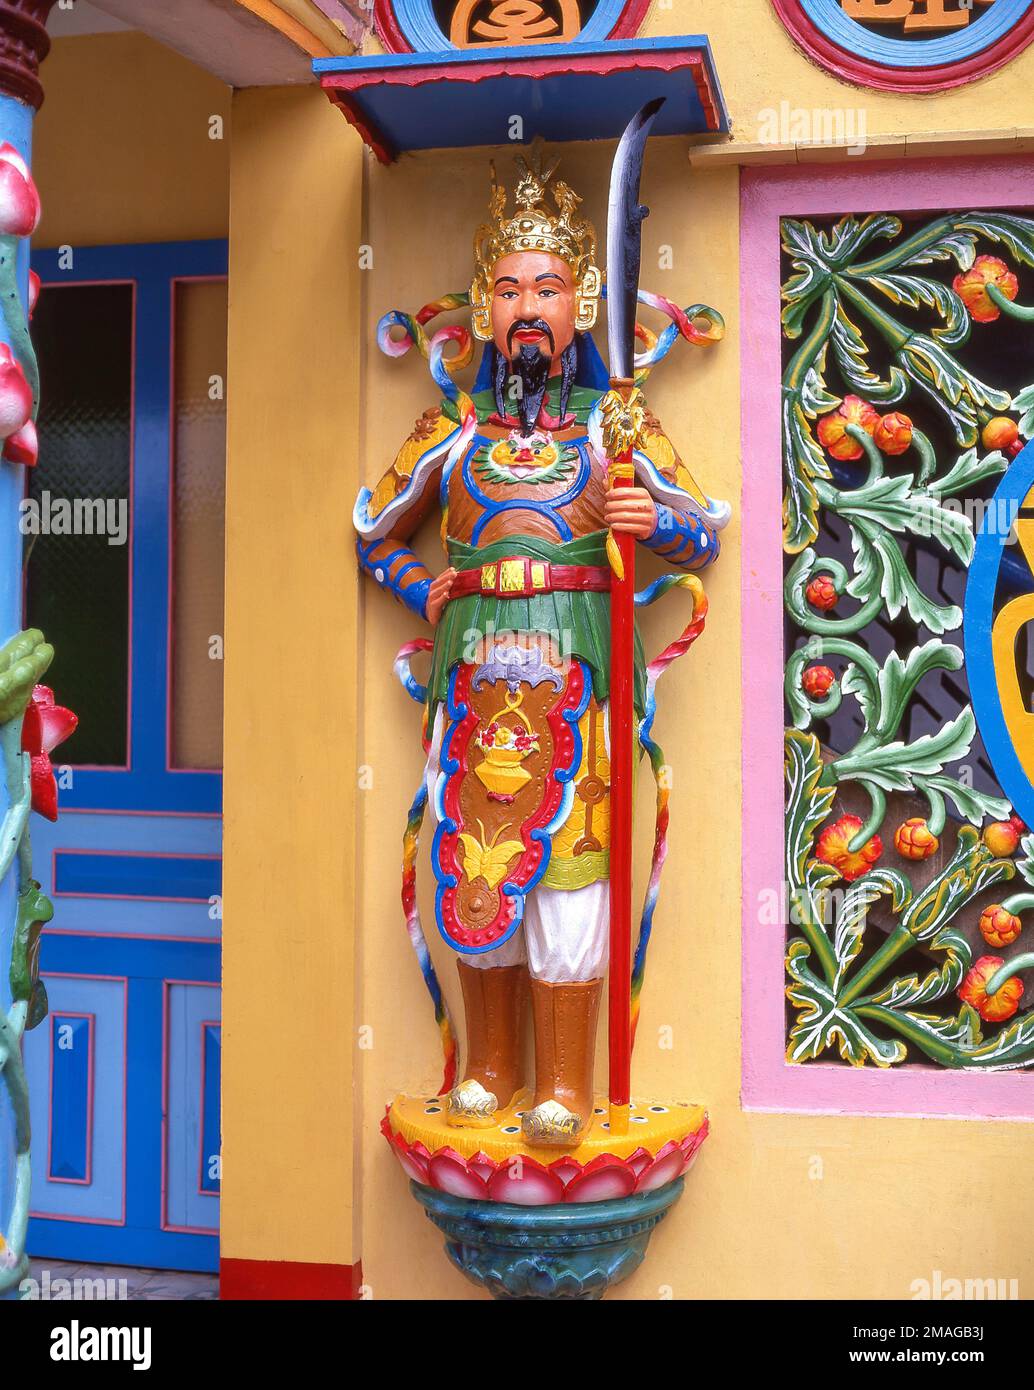 Colonnes colorées et statue, Tan an Thanh That Pagoda, delta du Mékong, sud du Vietnam, République socialiste du Vietnam Banque D'Images